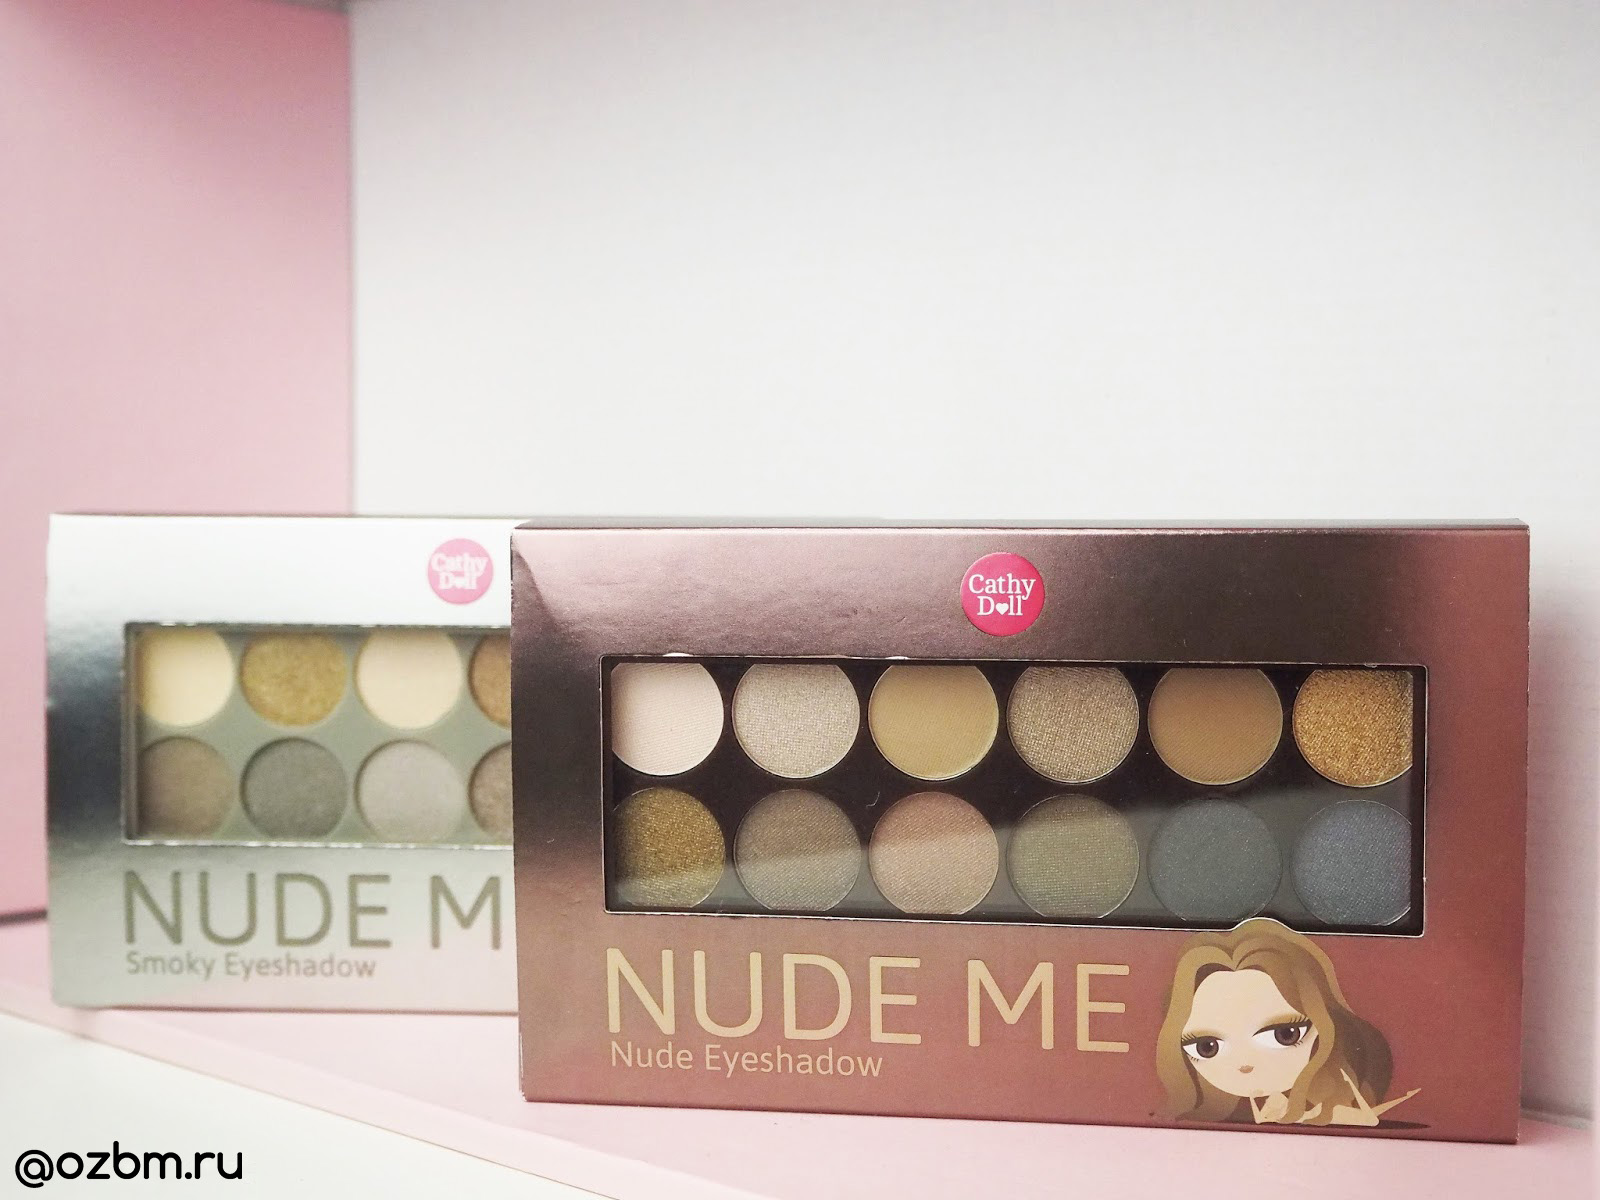 Тайская палетка теней № 01 Nude для создания нюд-макияжа Cathy Doll Nude Me Eyeshadow 01 Nude 12 оттенков. ТЕНИ ИЗ ТАИЛАНДА ПОЛЕТКА